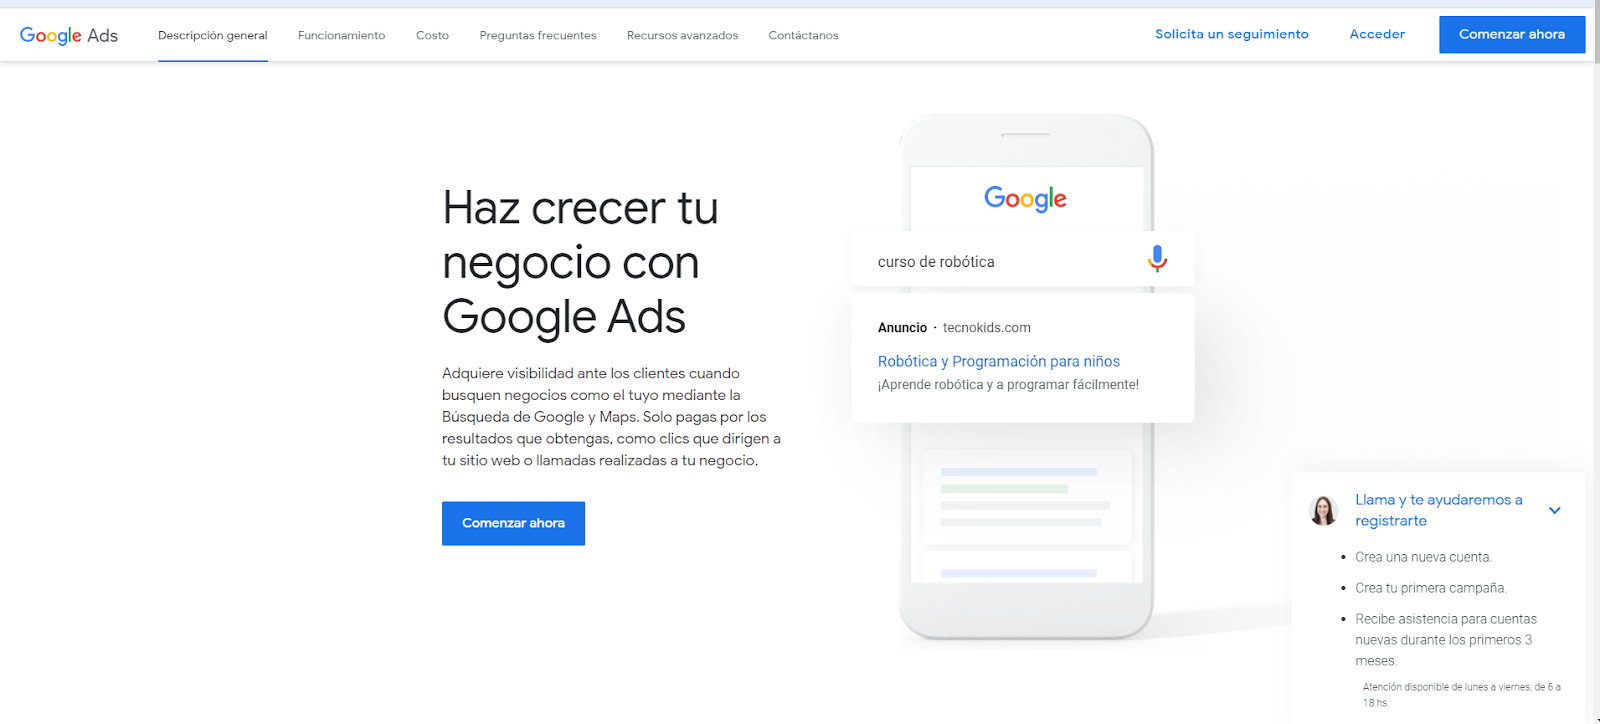 Pantalla de inicio de Google Ads en Español